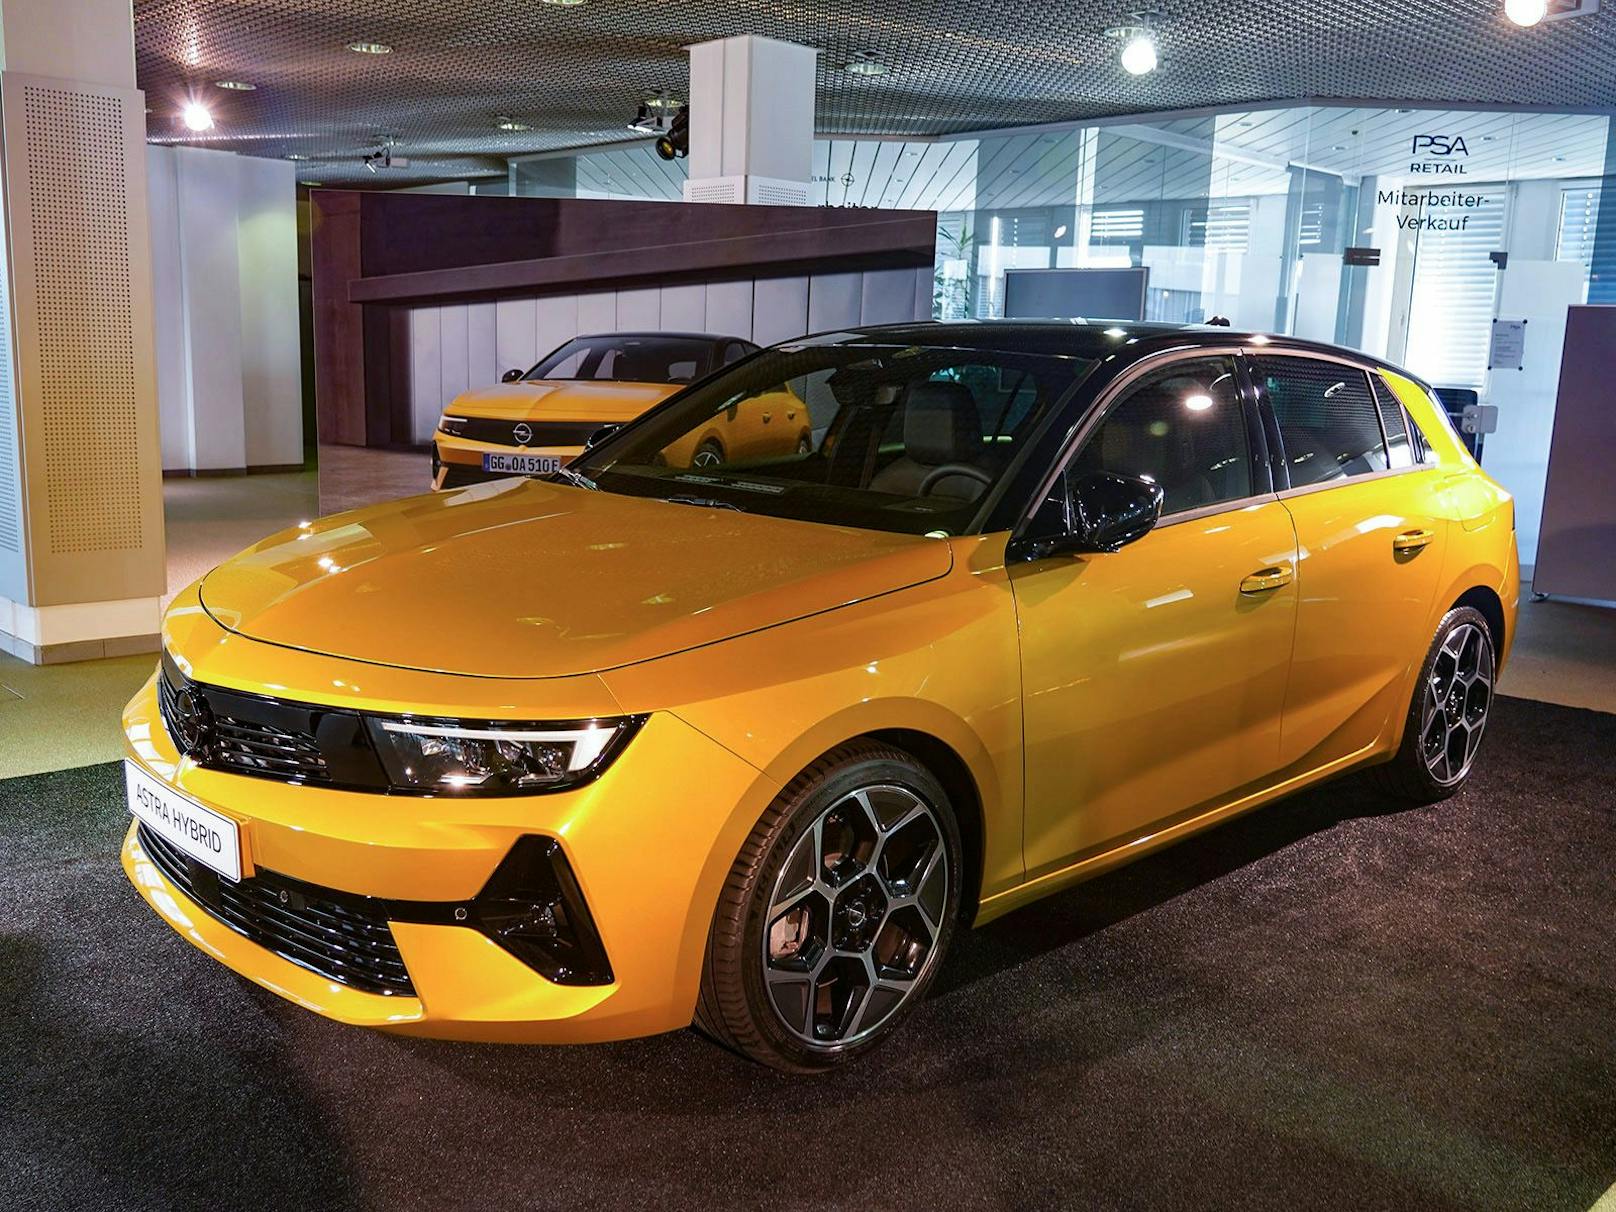 Das neue Opel-Design steht dem Astra sehr gut.